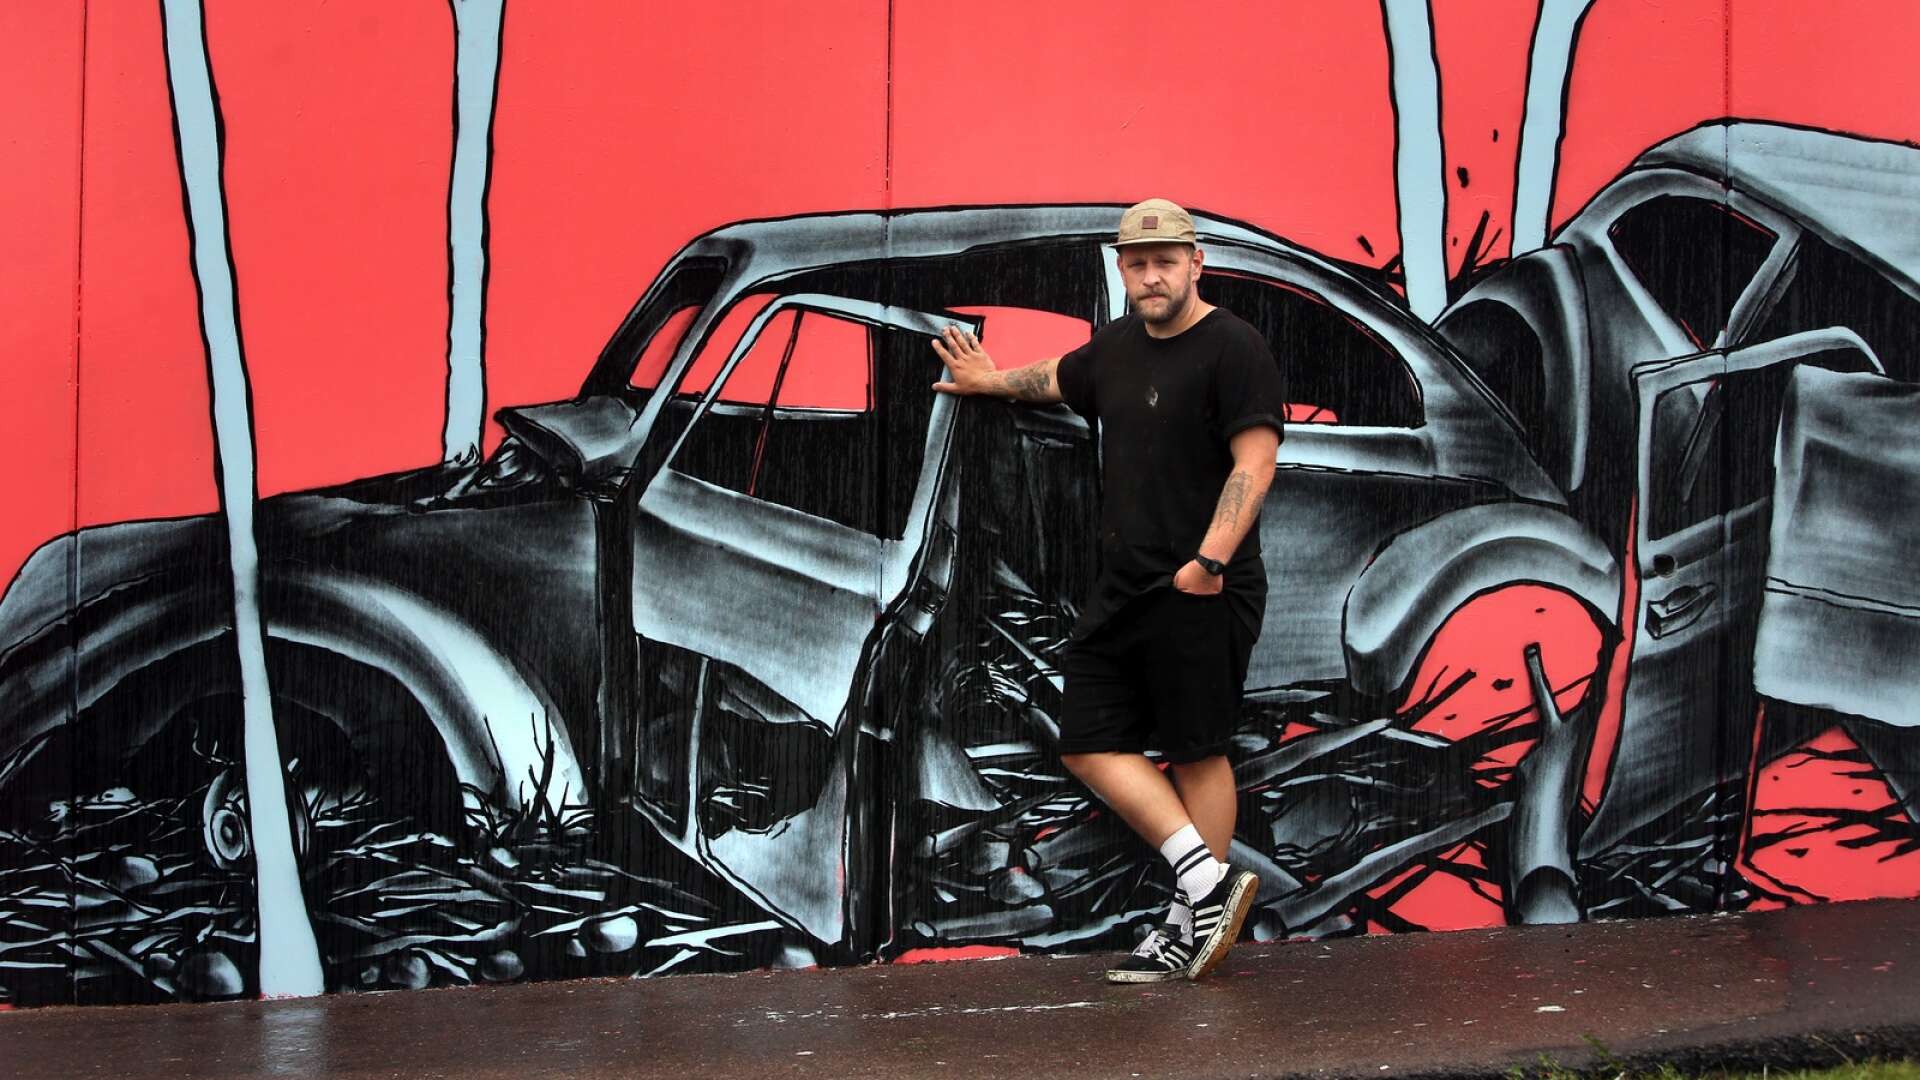 Konstnären Henric Thåg kommer tillbaka till Forshaga. Här står han vid en muralmålning han tidigare gjort vid multisportarenan. Den här gången ska också måla en bil, eller, rättare sagt, på en bil.